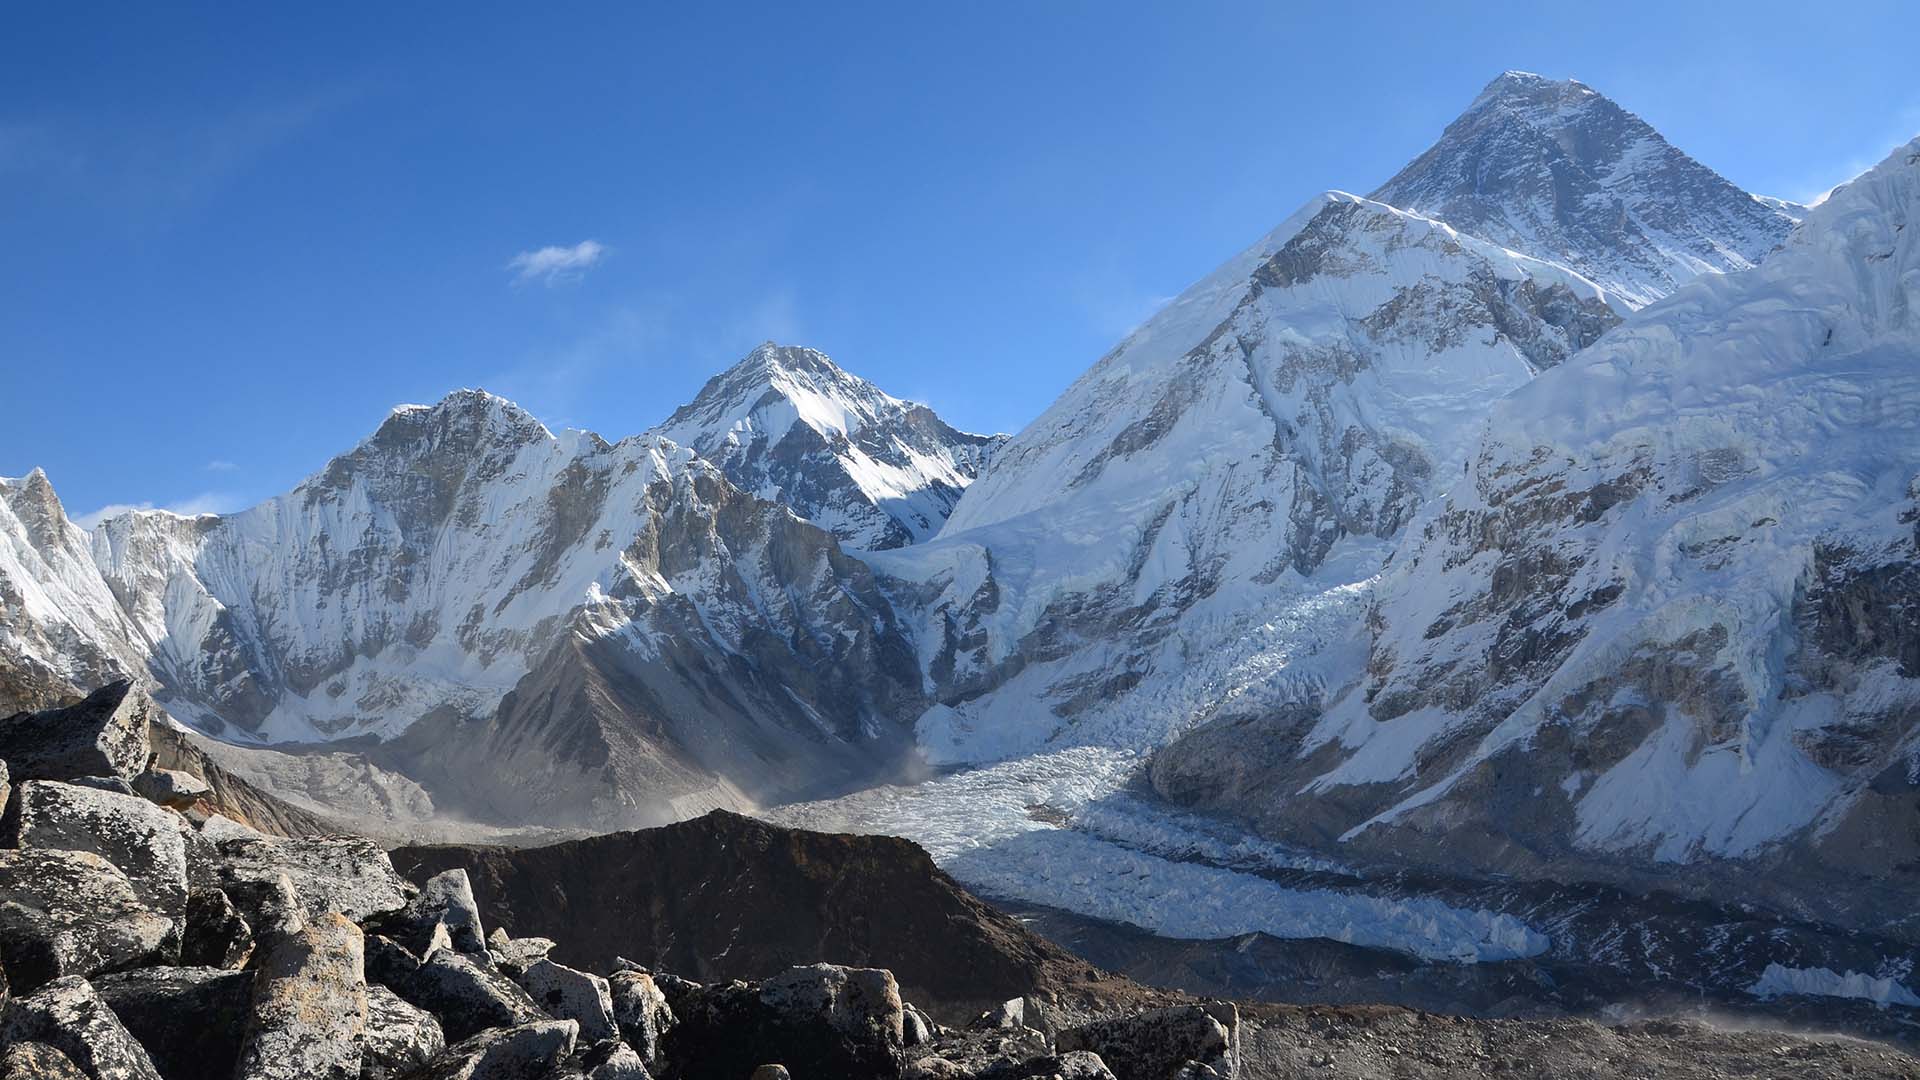 Kala Patthar Mount Everest